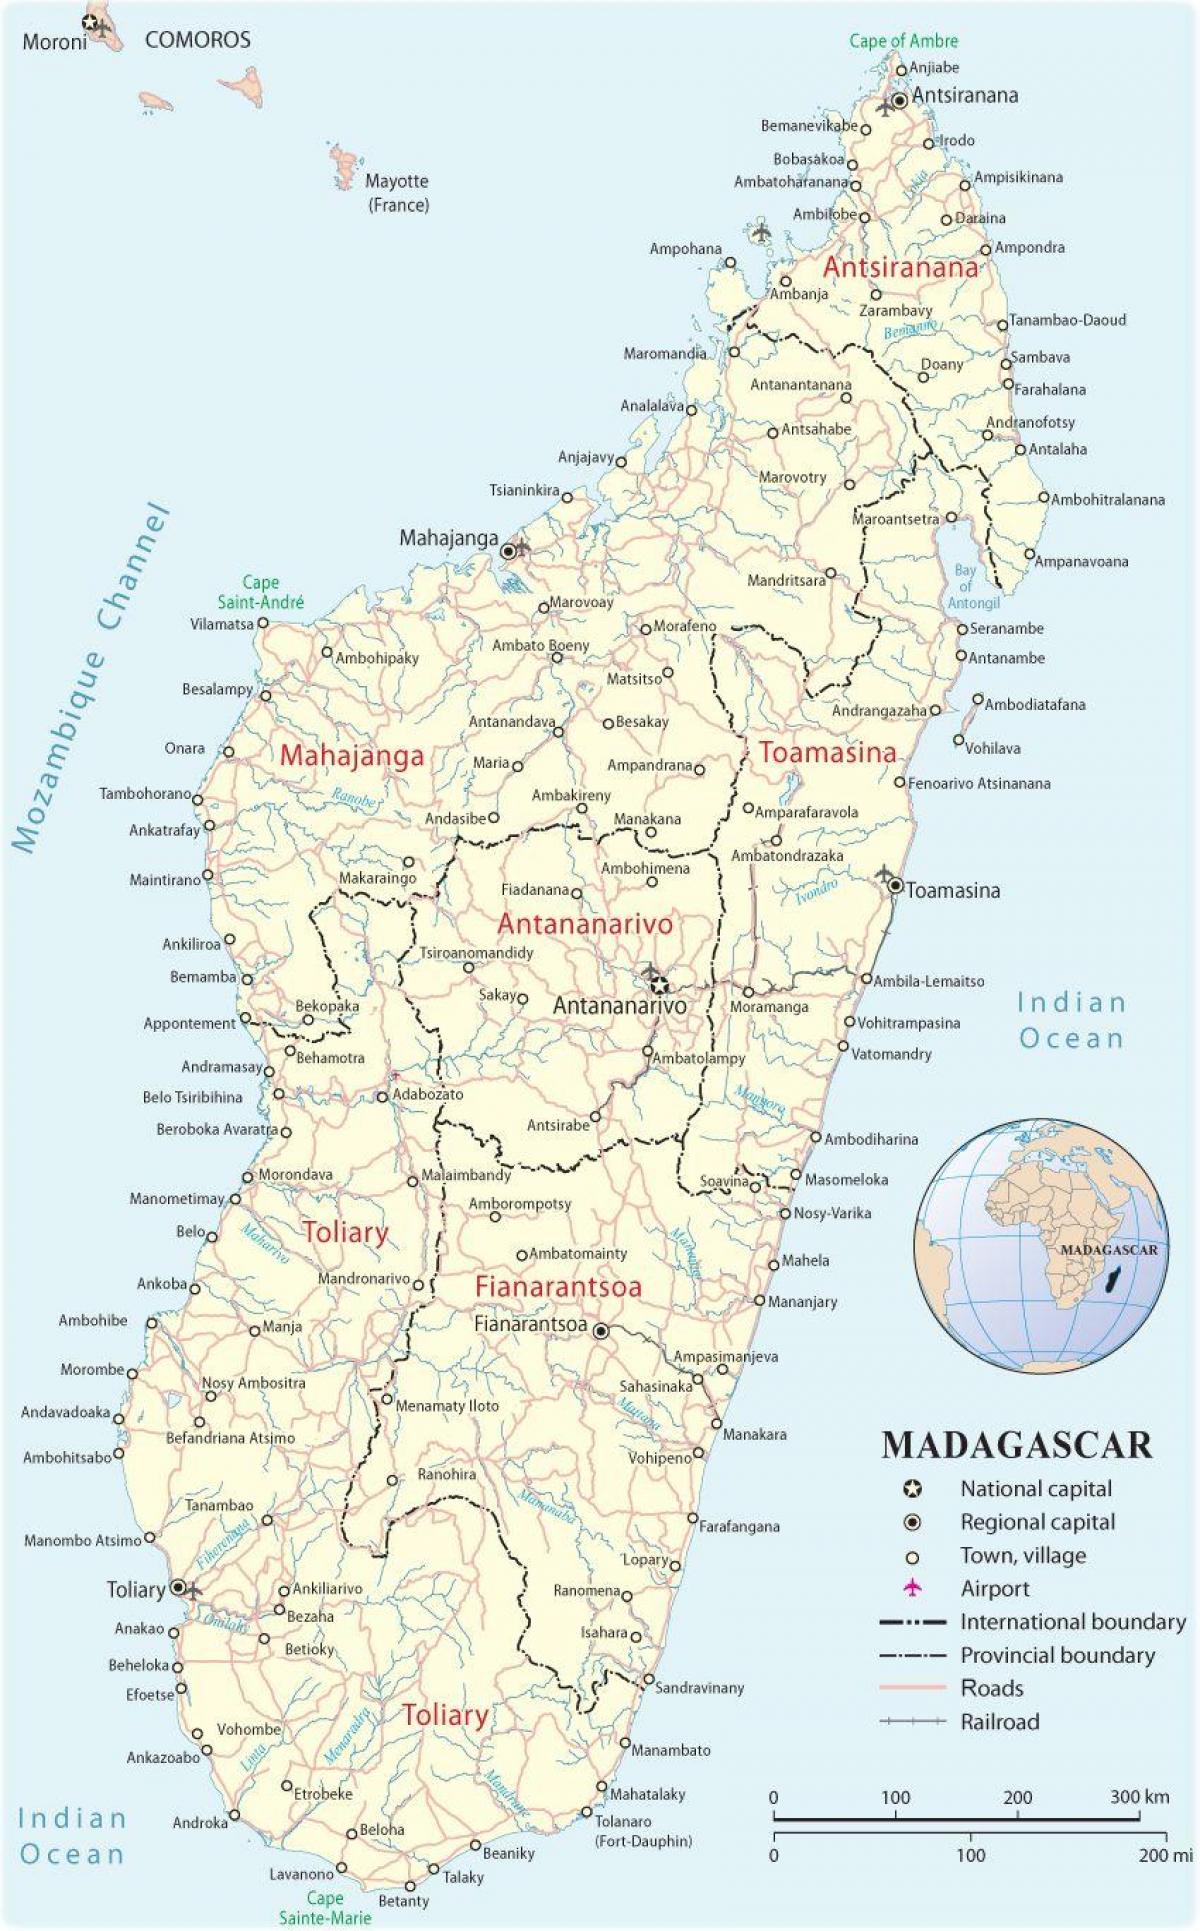 քարտեզ Մադագասկար օդանավակայանների